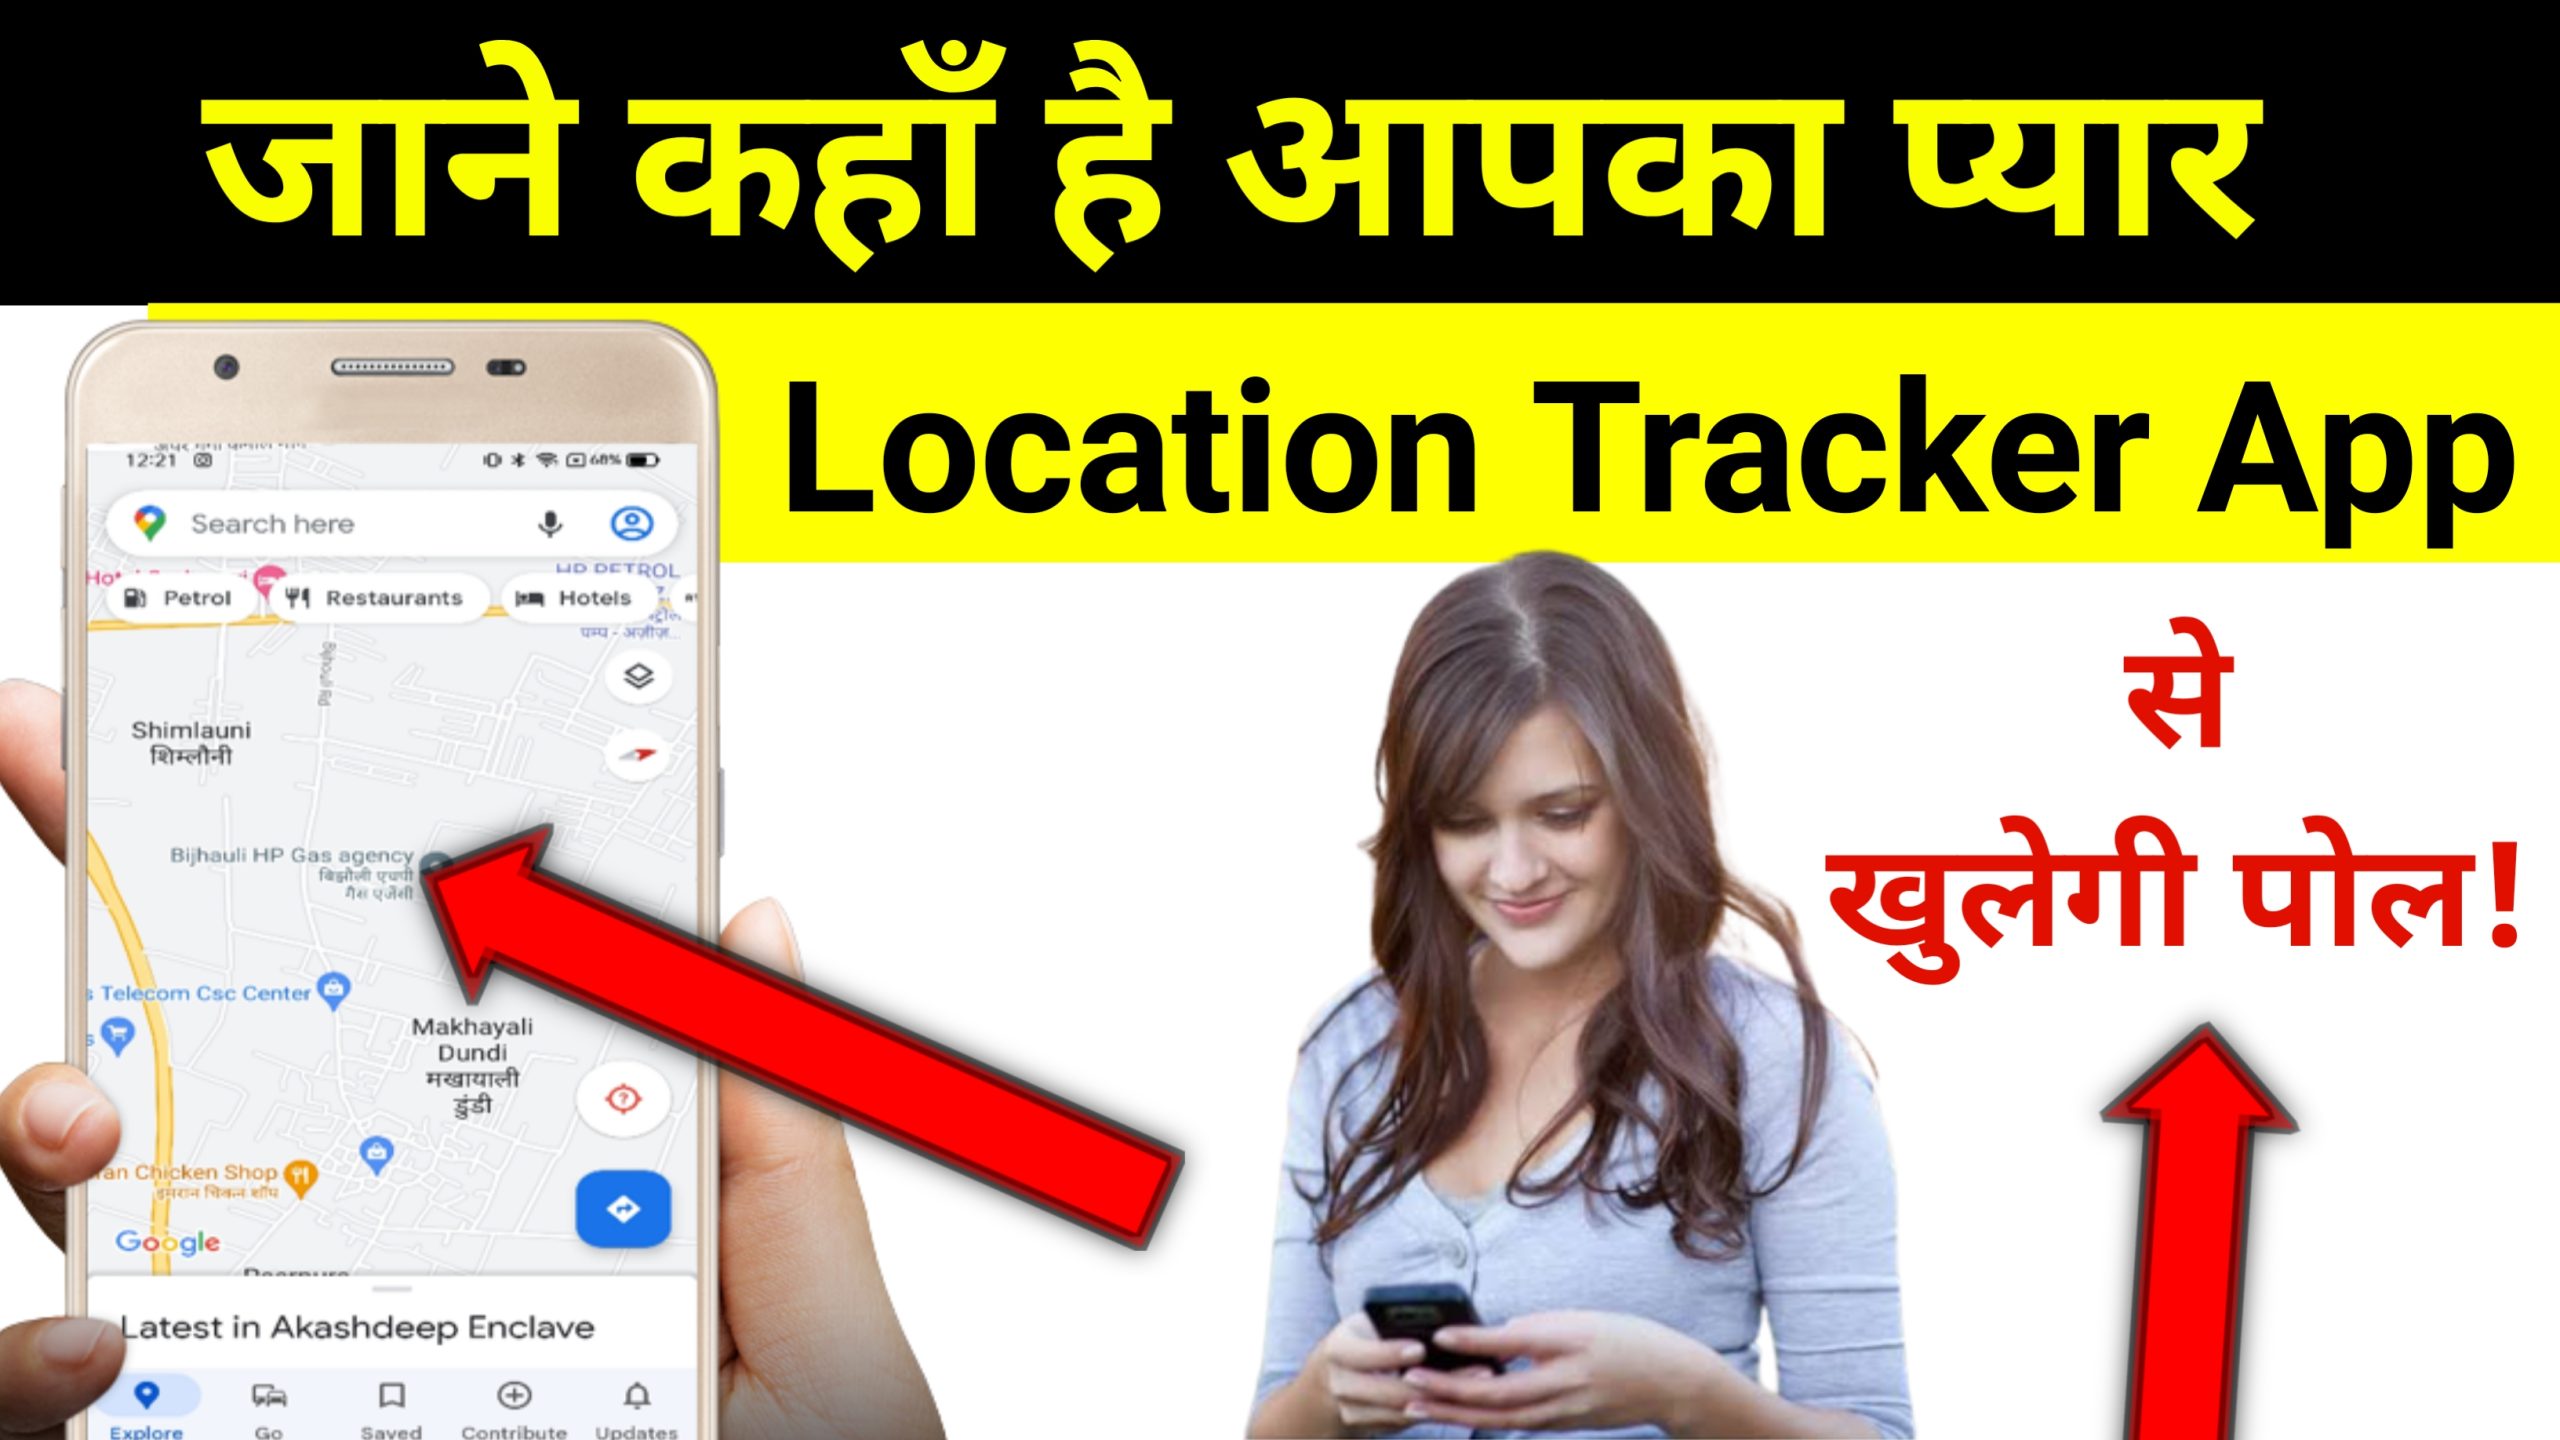 जाने कहाँ है आपका प्यार 'Location Tracker App' से ?